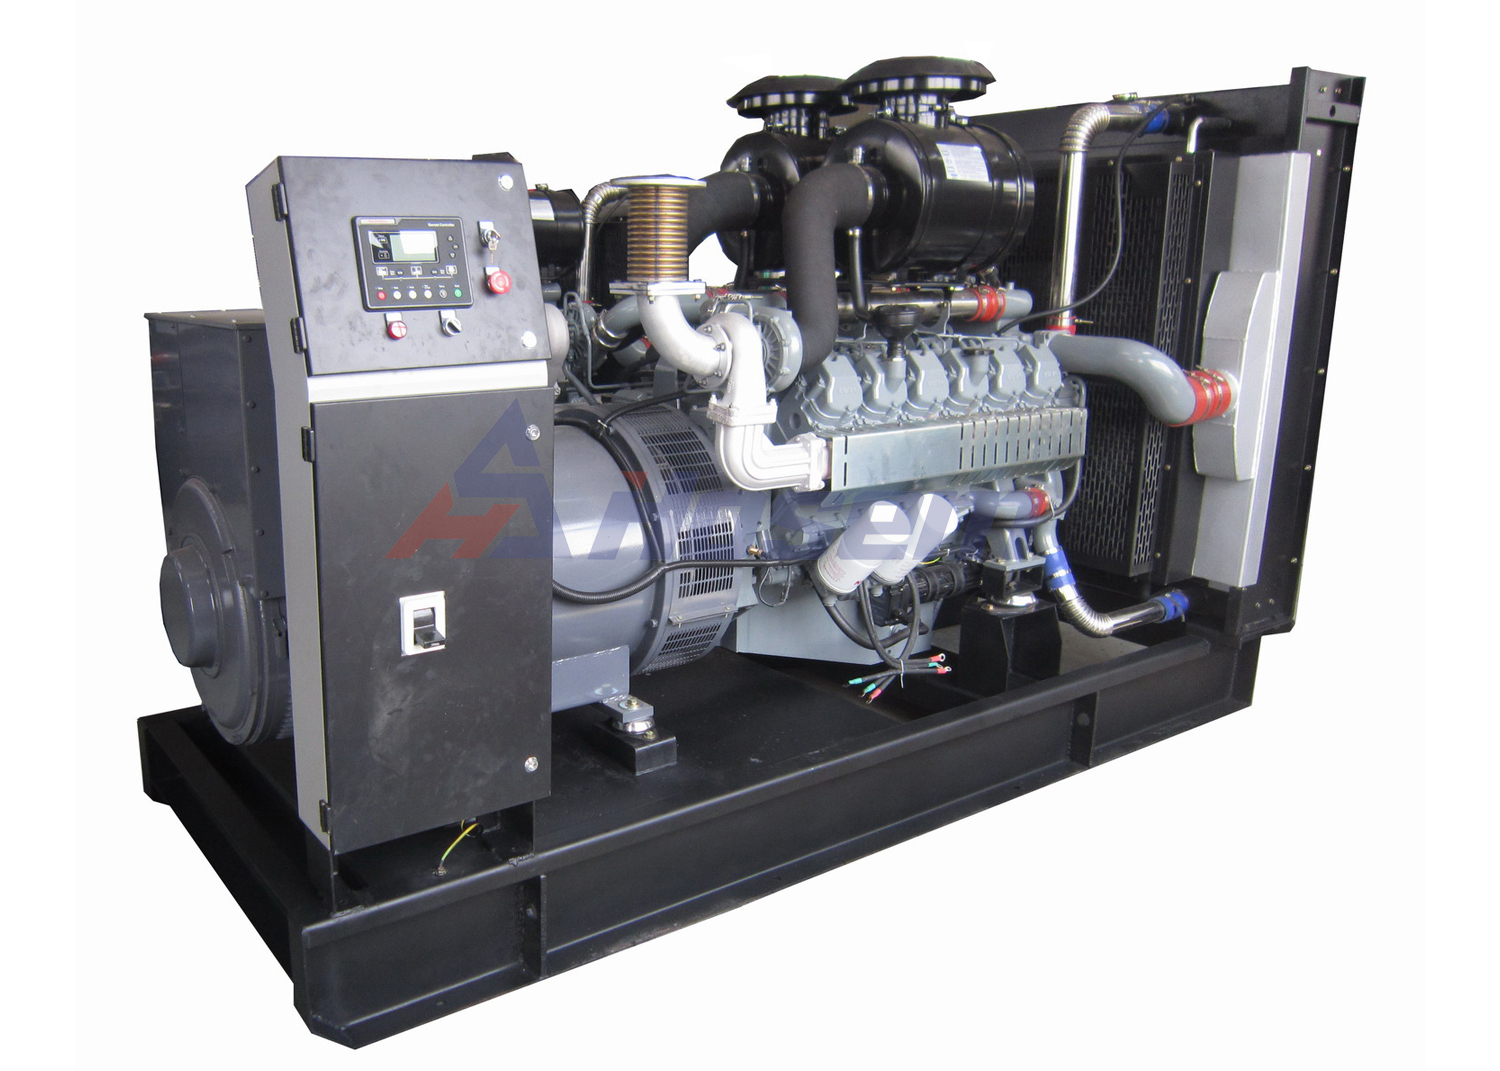 Industrial Generator Set 700kVA Powered by Vman Diesel Engine Model D22